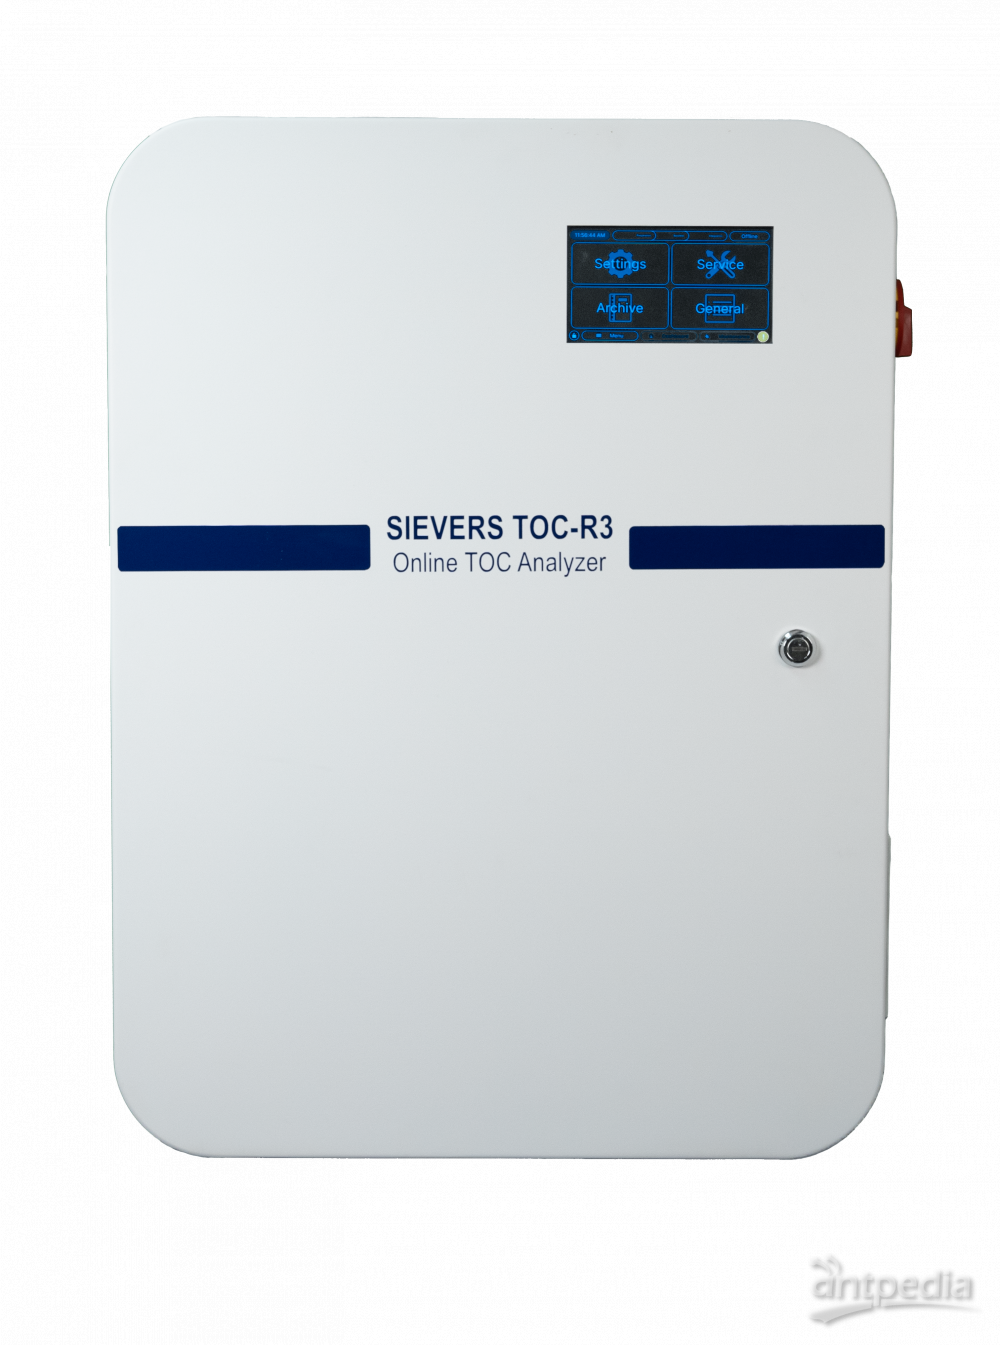 食品饮料生产厂用 Sievers* TOC-R3 来检测水质异常和 控制废水处理工艺